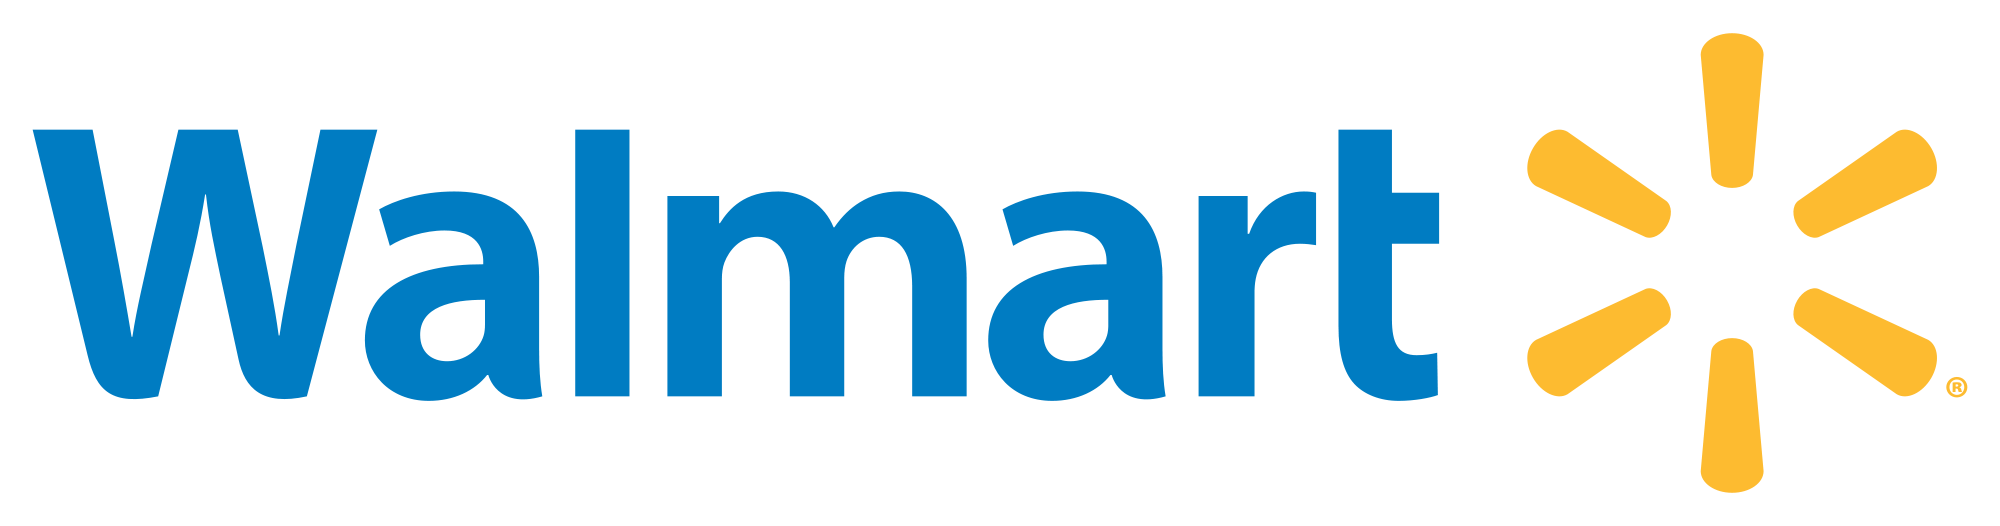 Walmart logo (previously Wal-Mart until 2008).